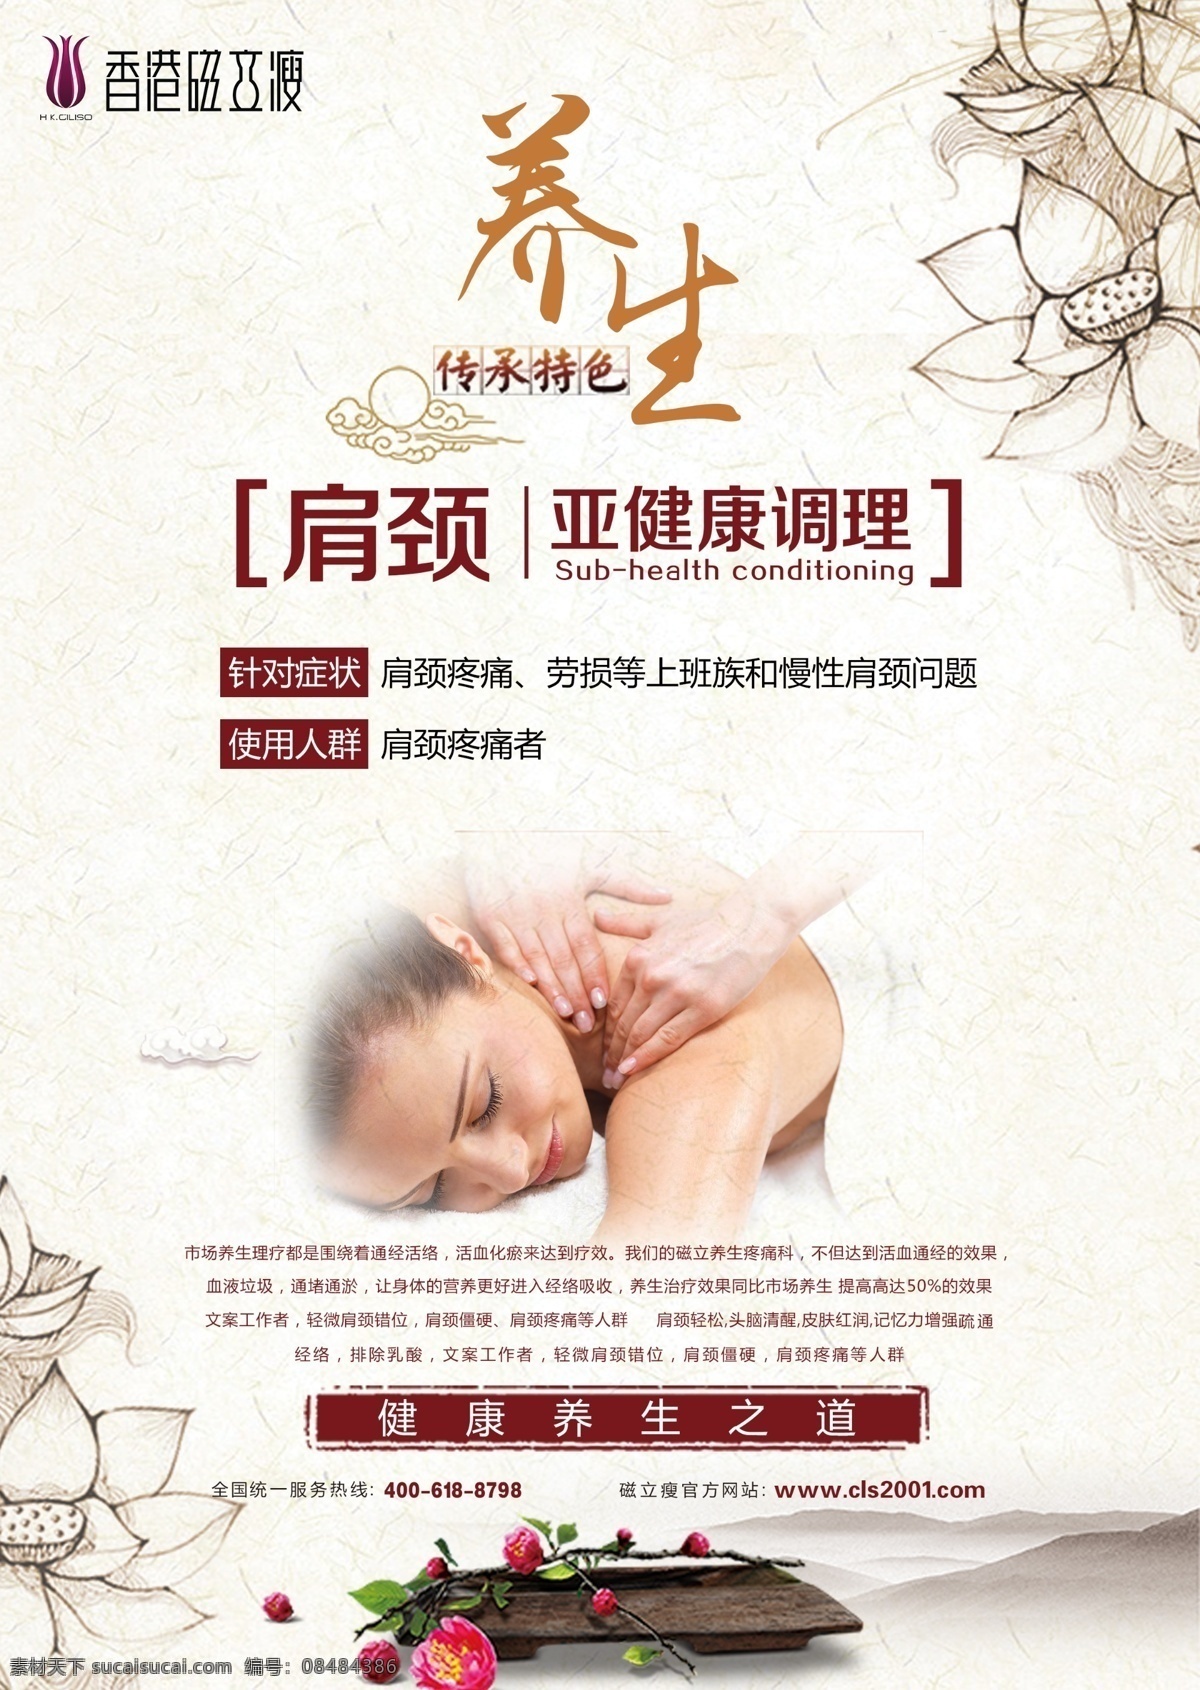 香港 磁力 瘦 肩 颈 养生 磁力瘦 宫颈 女性 妇科 健康 妇女 传统 调理 广告 宣传画 宣传单 广告类型